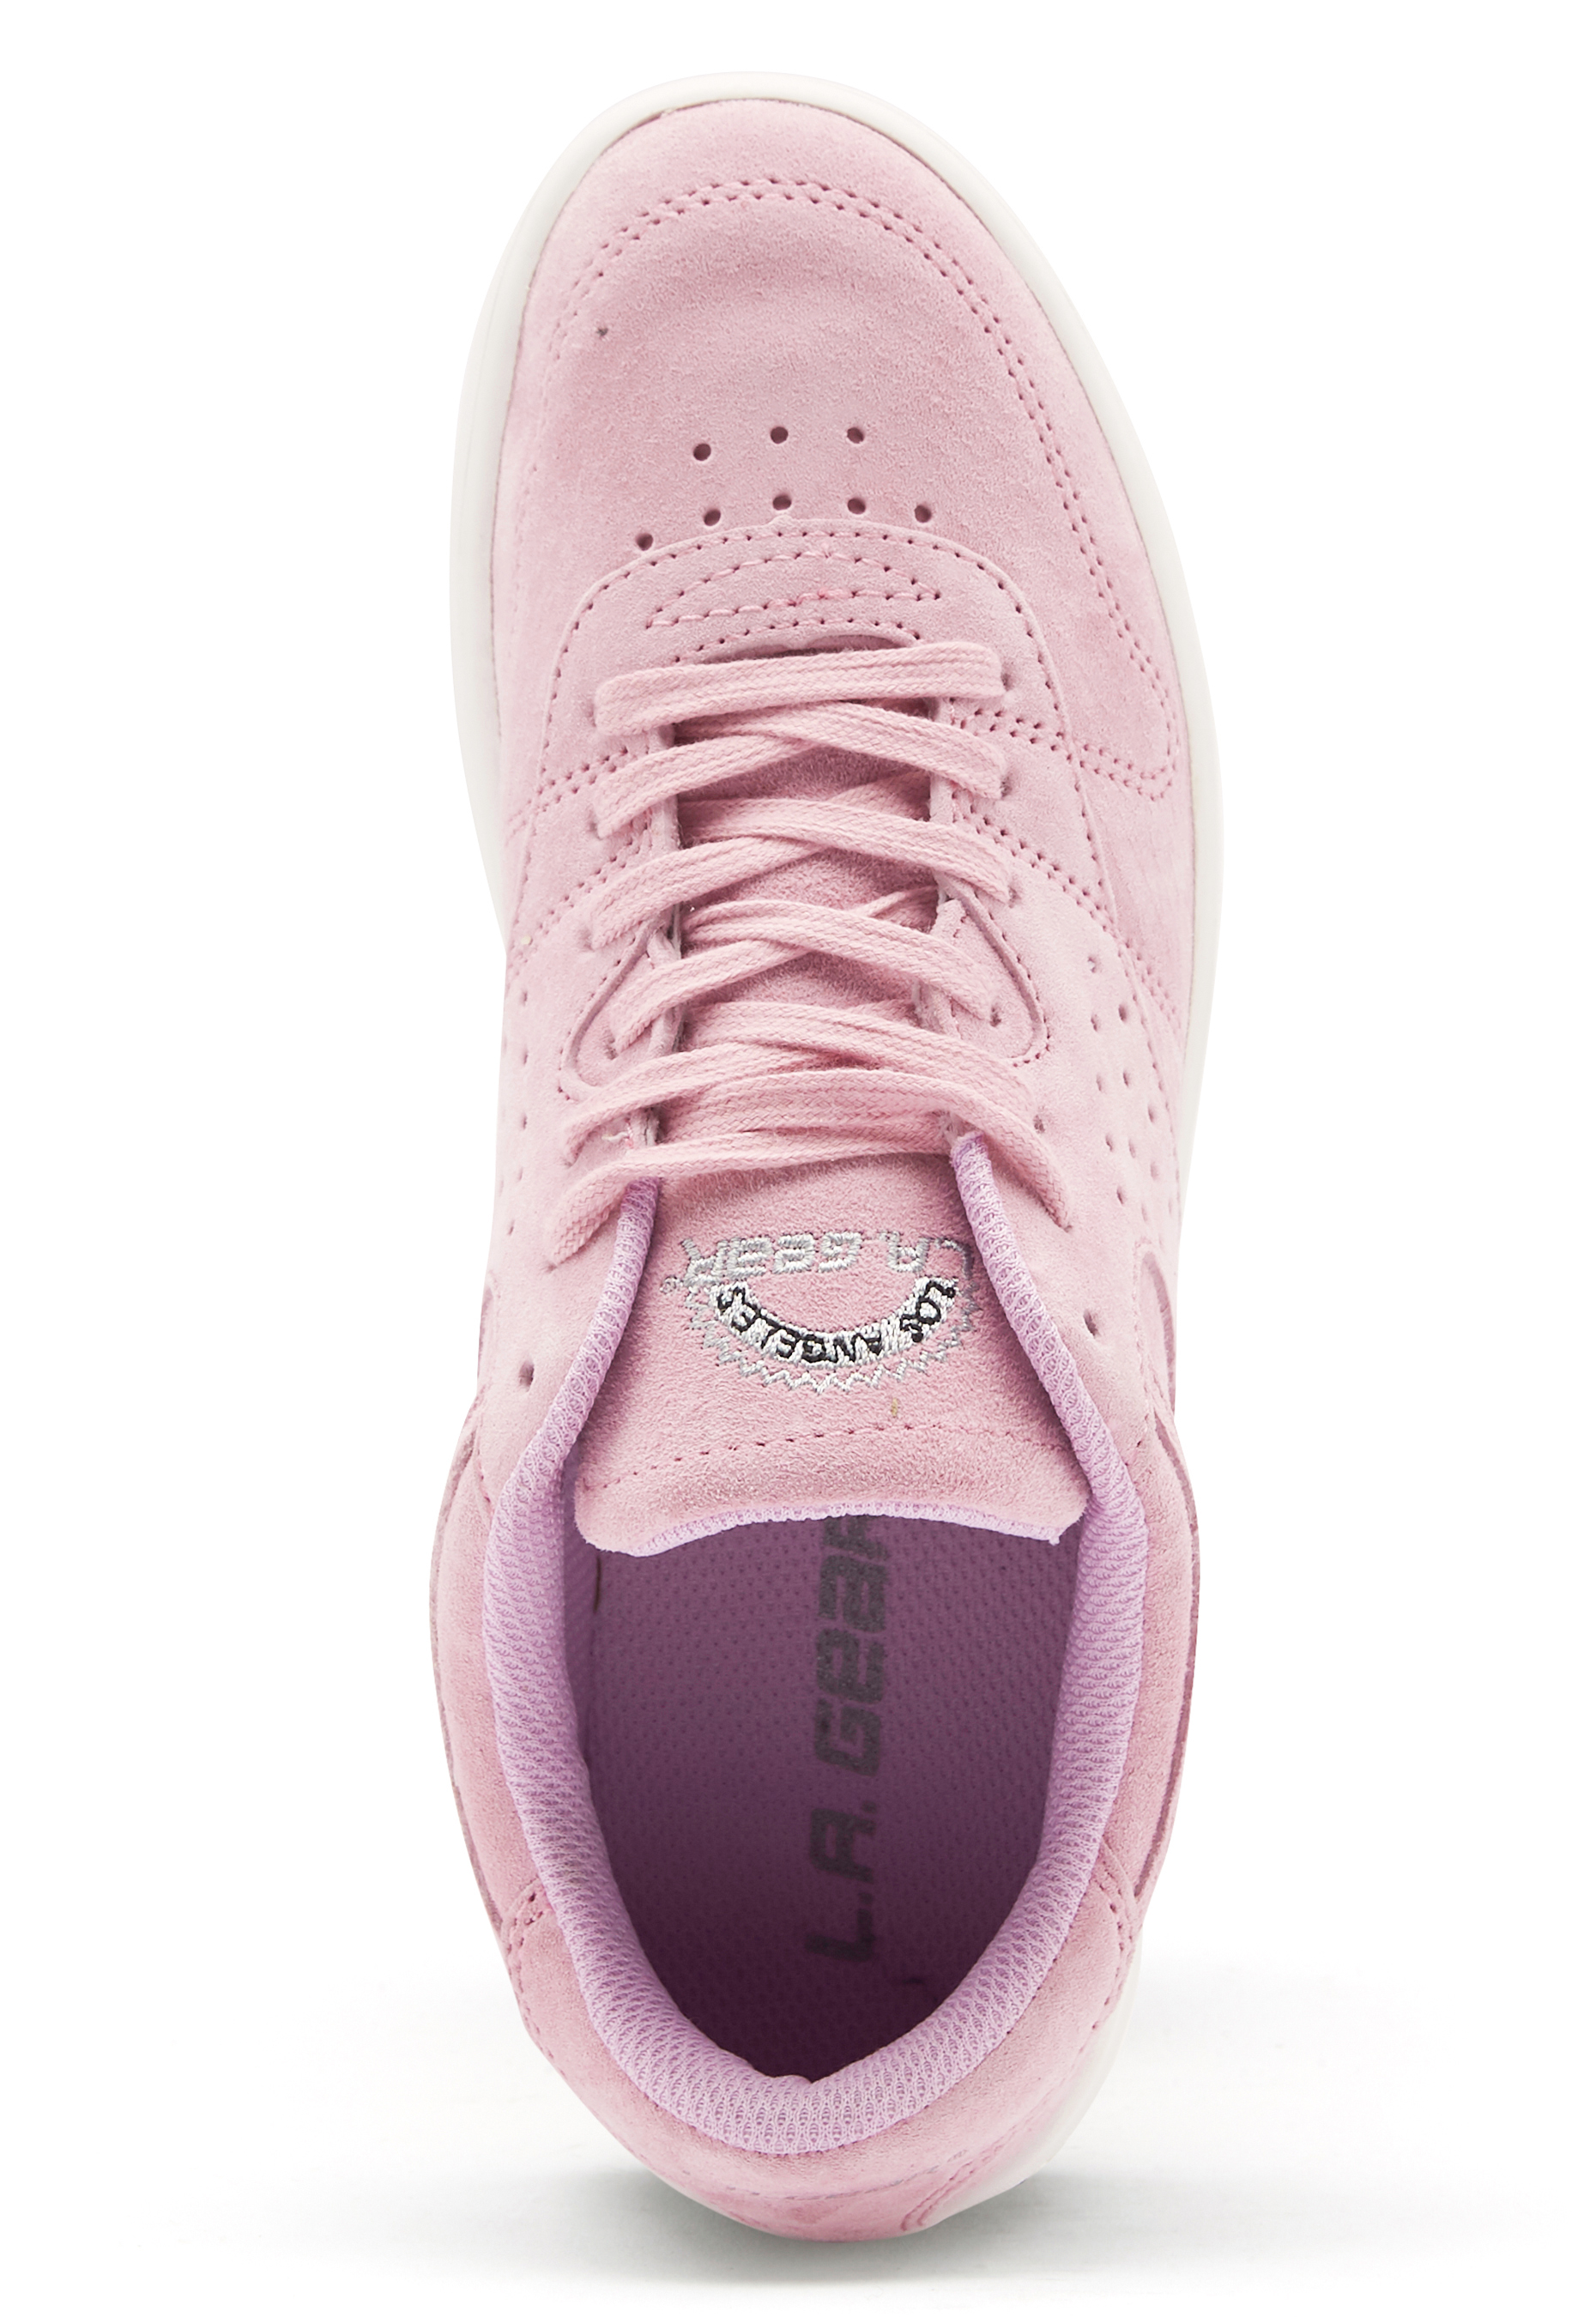 pink la gear sneakers